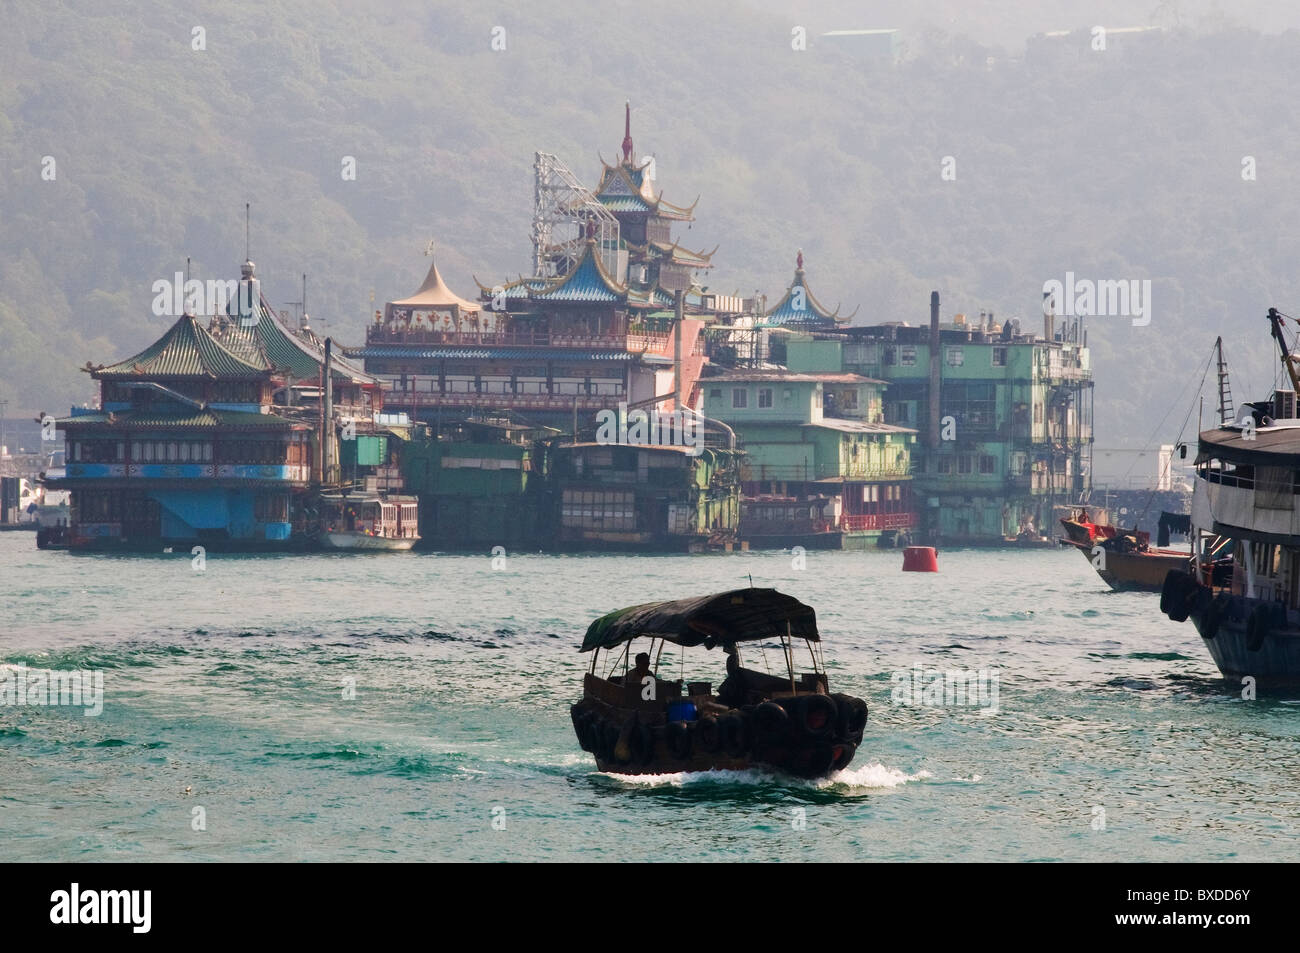 Unica barca bum in viaggio lungo la via navigabile in Hong Kong Cina con gamberoni ristorante in background Foto Stock